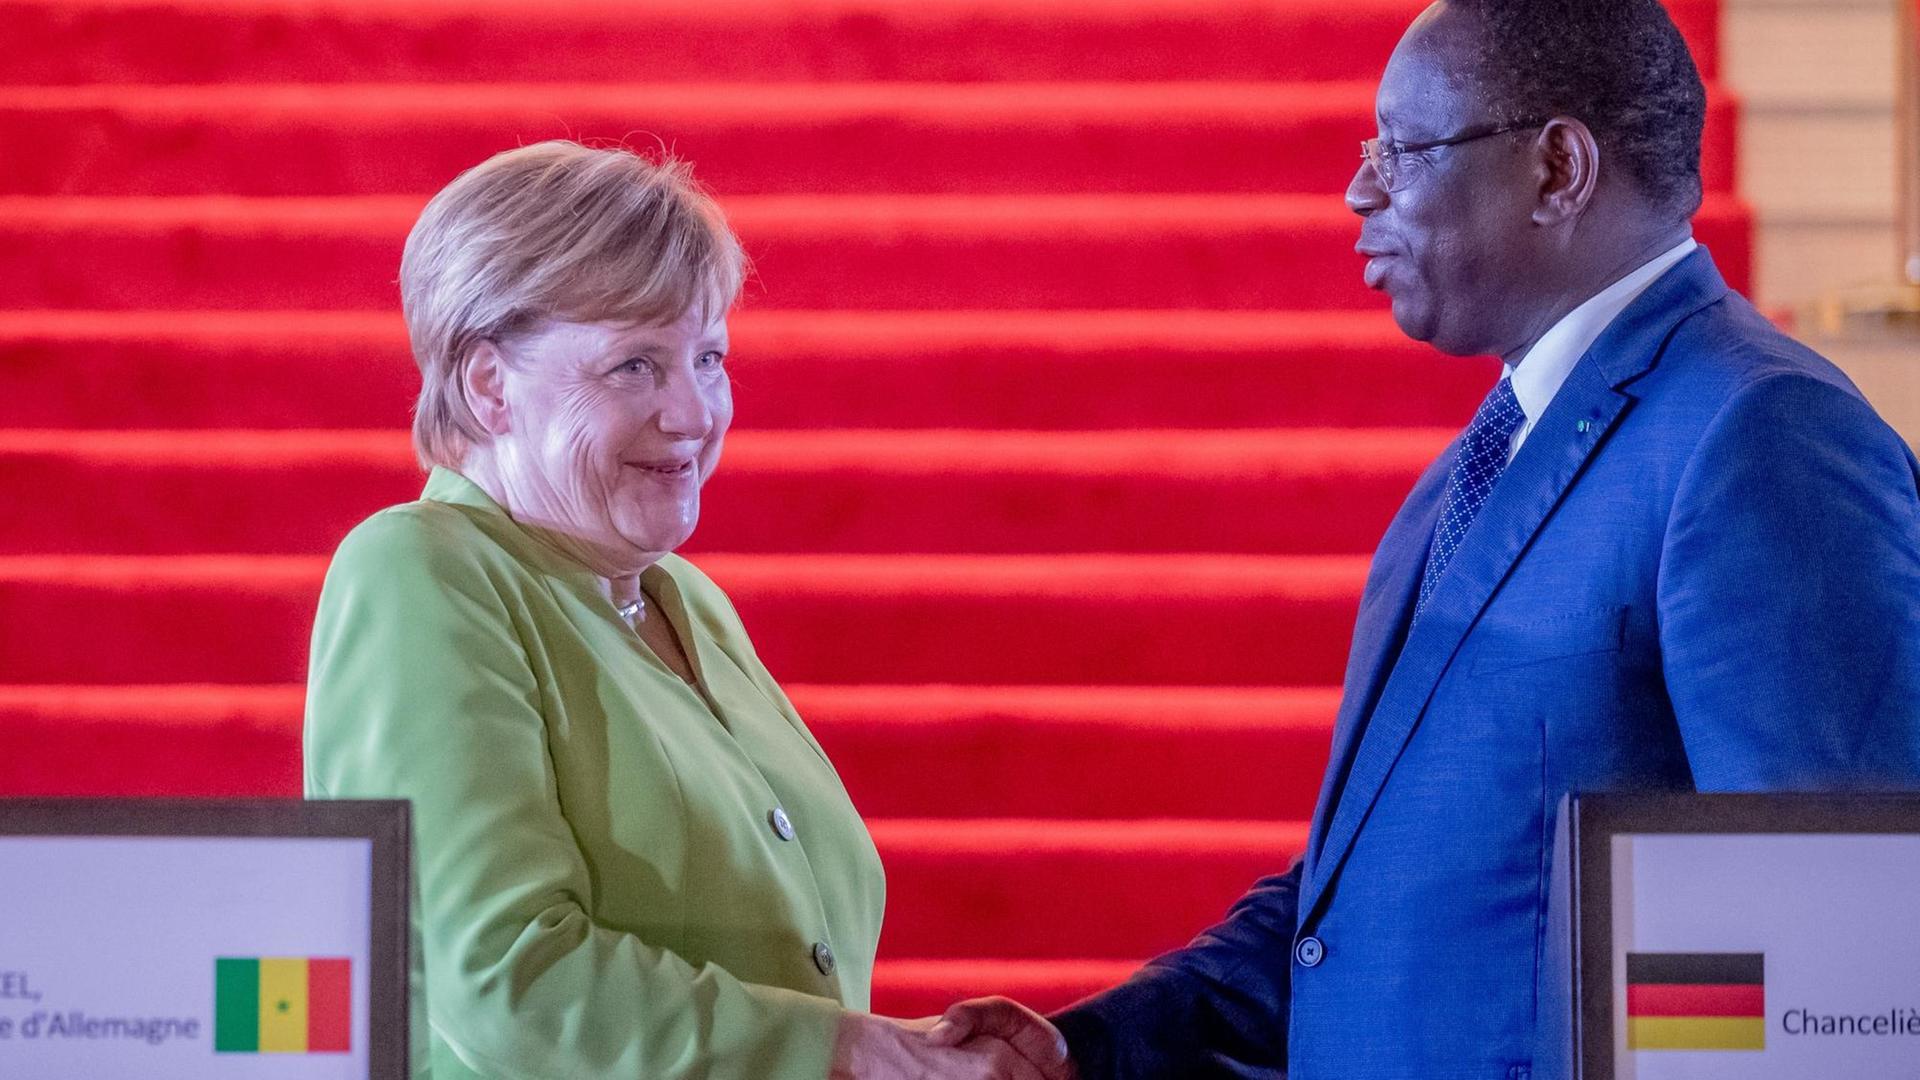 Bundeskanzlerin Angela Merkel (CDU) verabschiedet sich von Macky Sall, dem Präsidenten der Republik Senegal, nach einer Pressekonferenz nach dem Gespräch im Präsidentenpalast von Dakar.